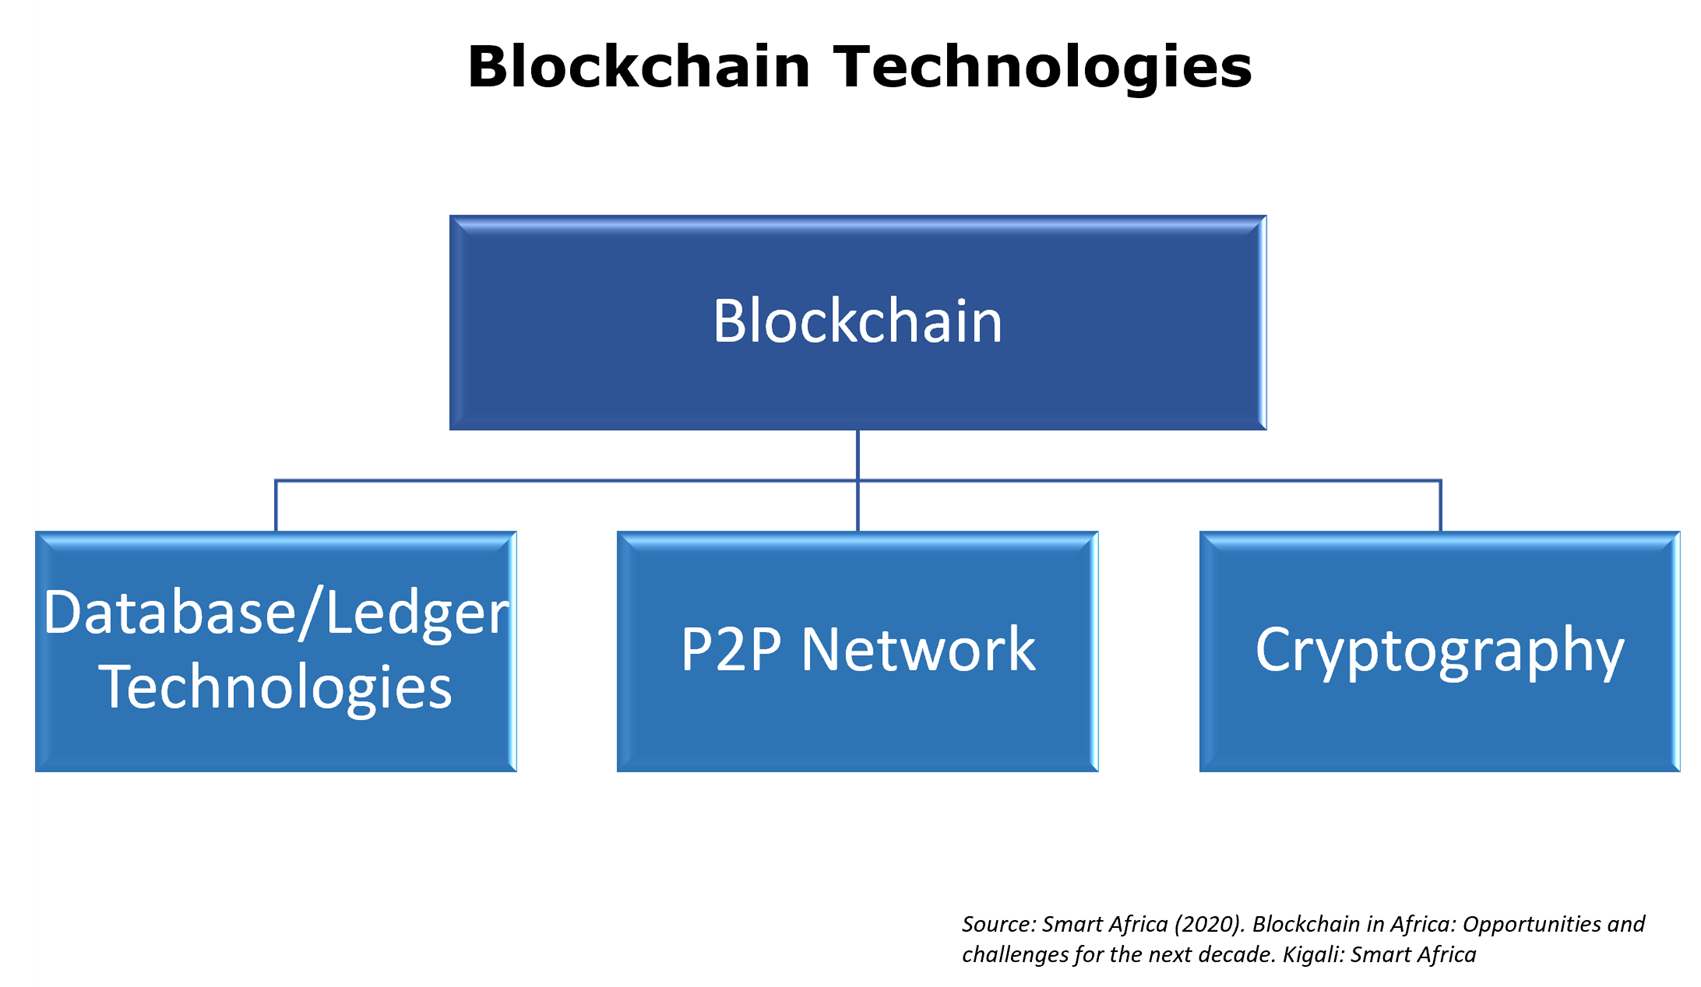 Figure of blockchain technologies